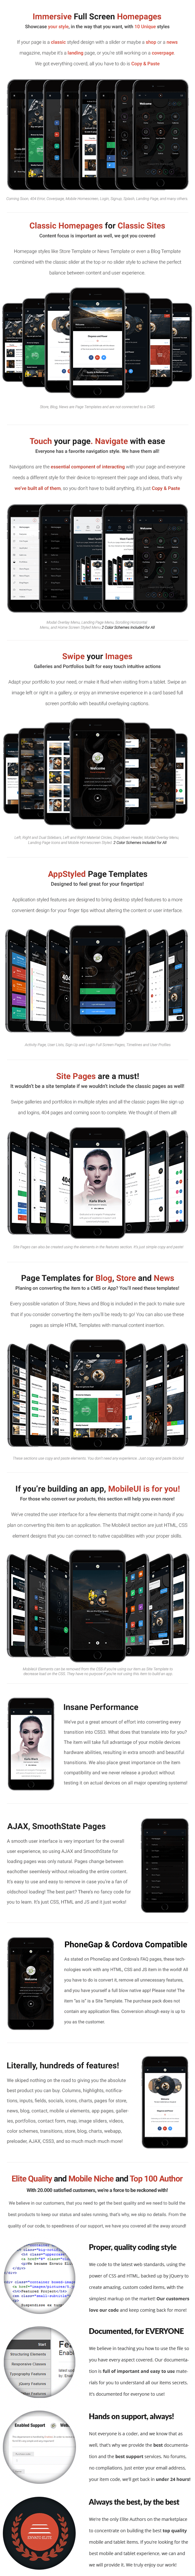 Flip 3D | PhoneGap & Cordova Mobile App - 11